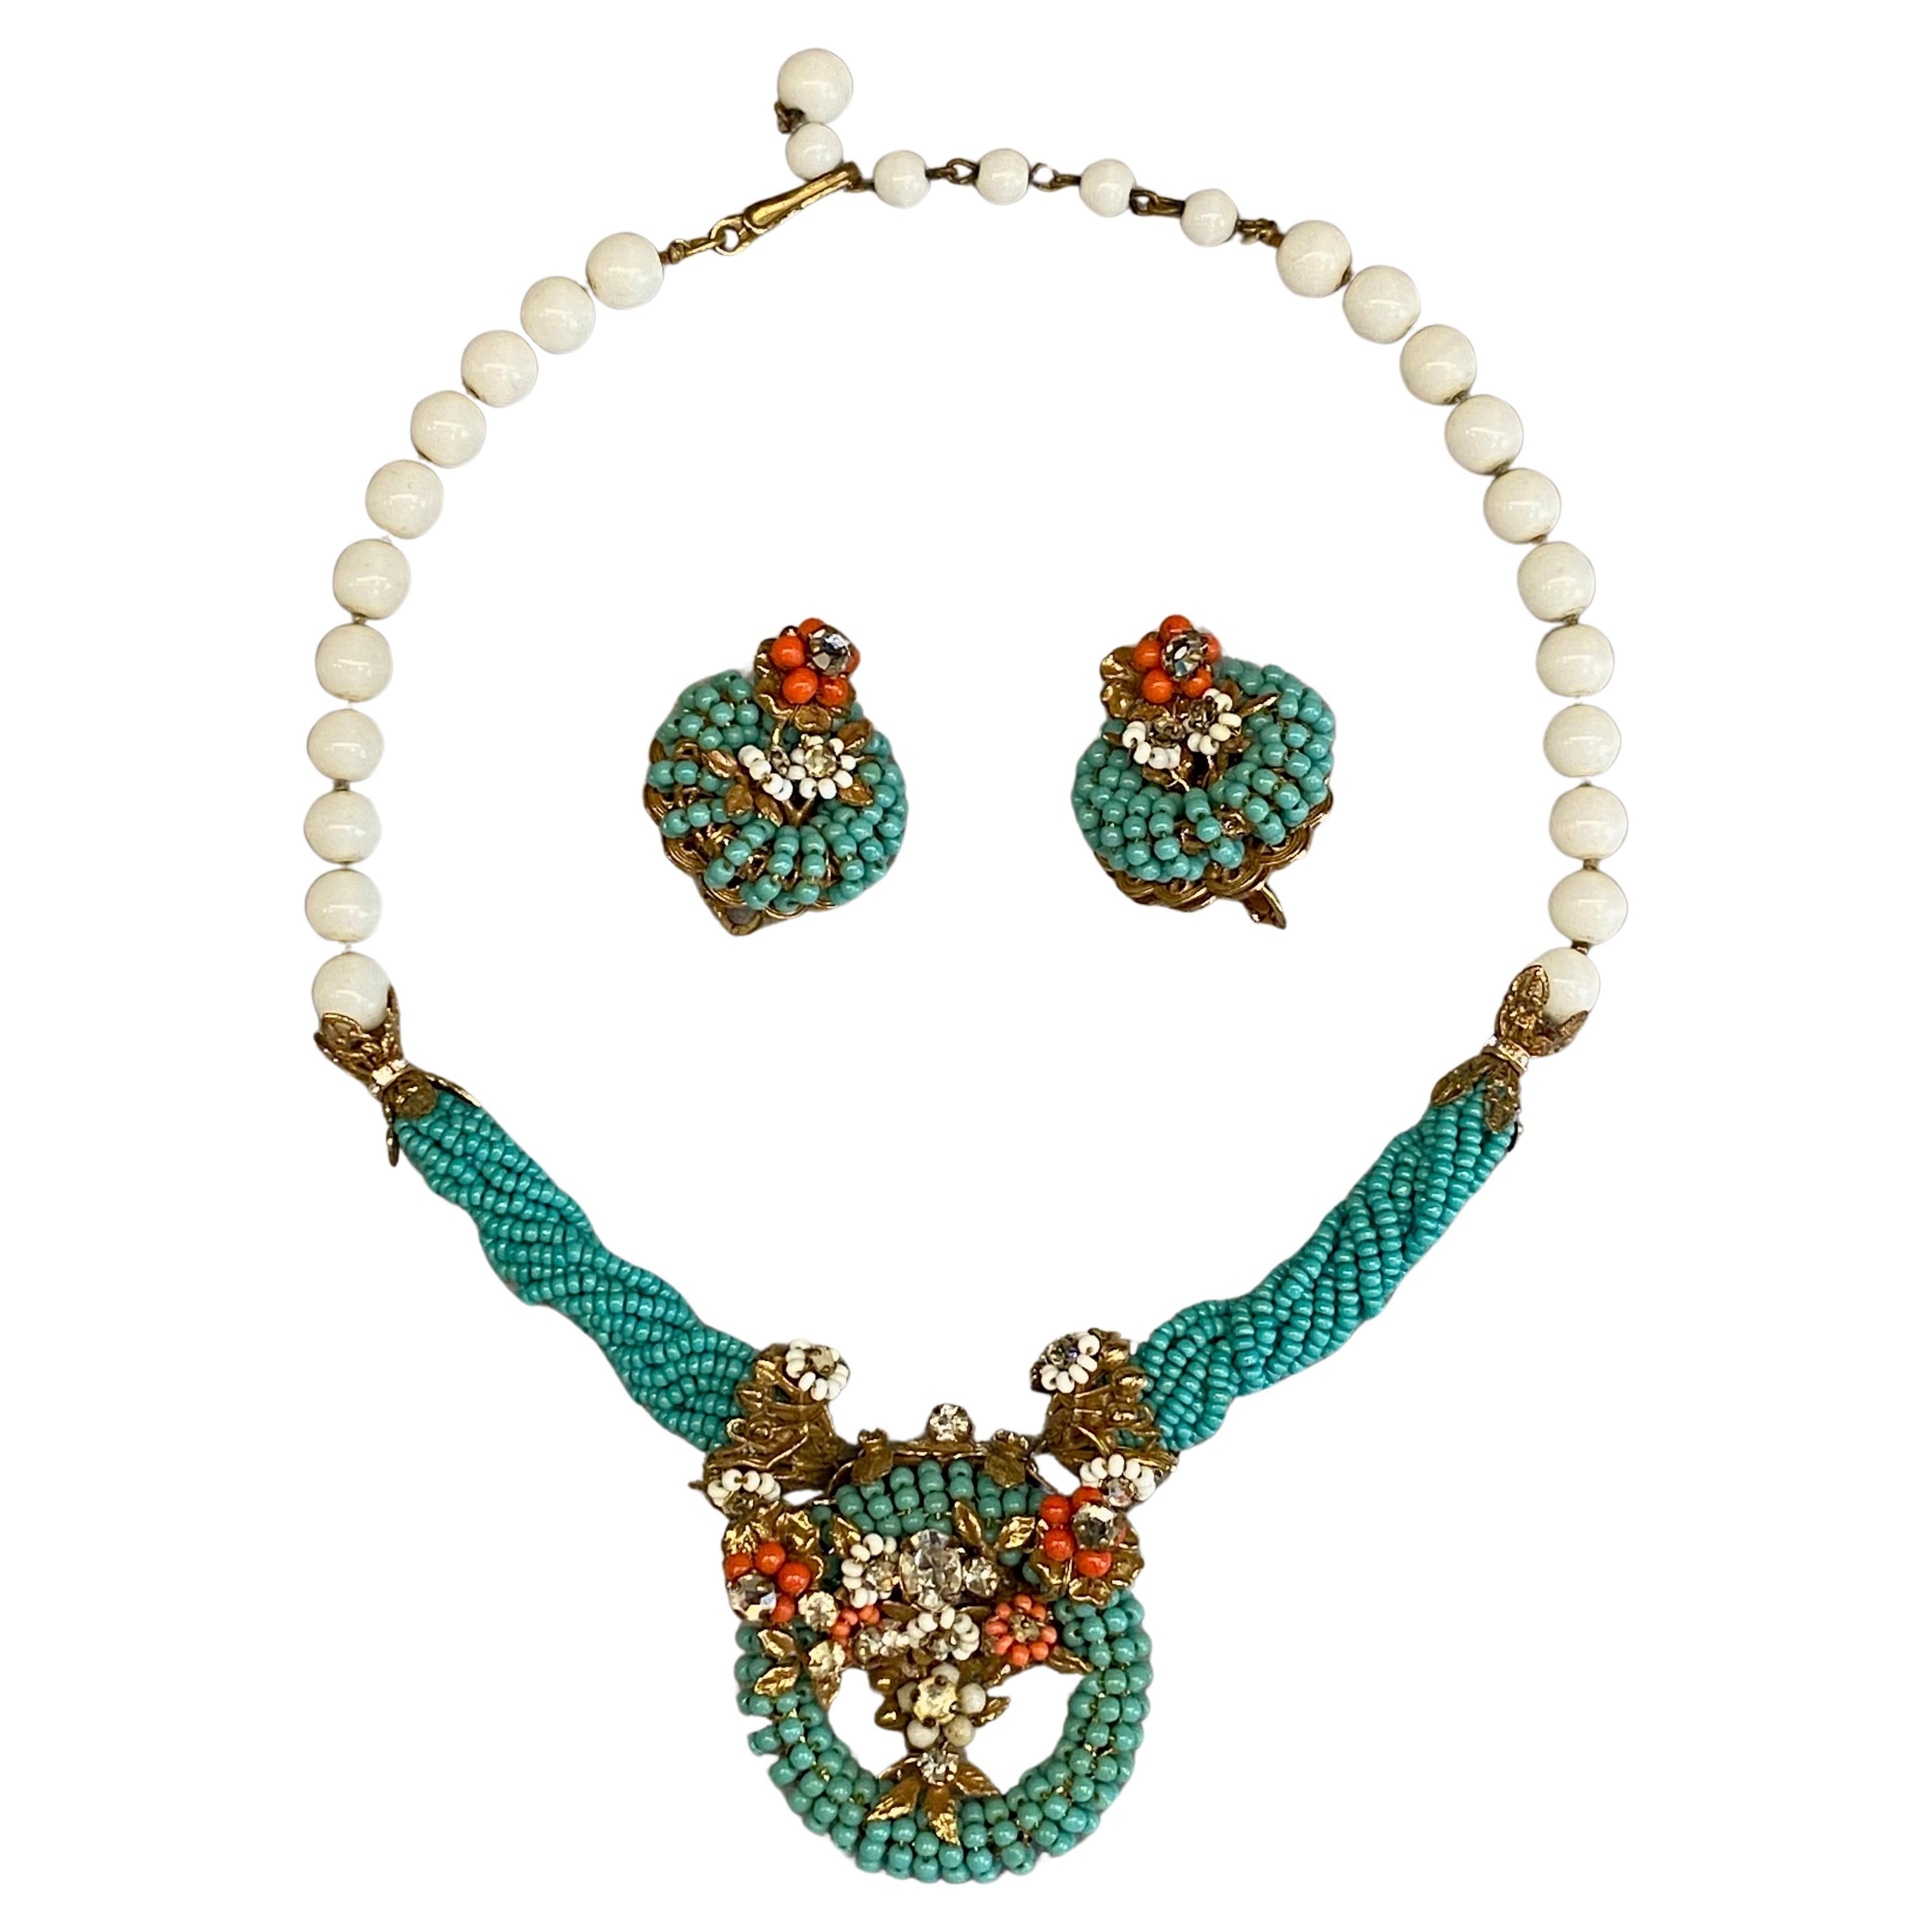 Original von Robert 1950er Jahre Türkis, Koralle und weiße Glasperlenkette & Ohrringe mit Perlen